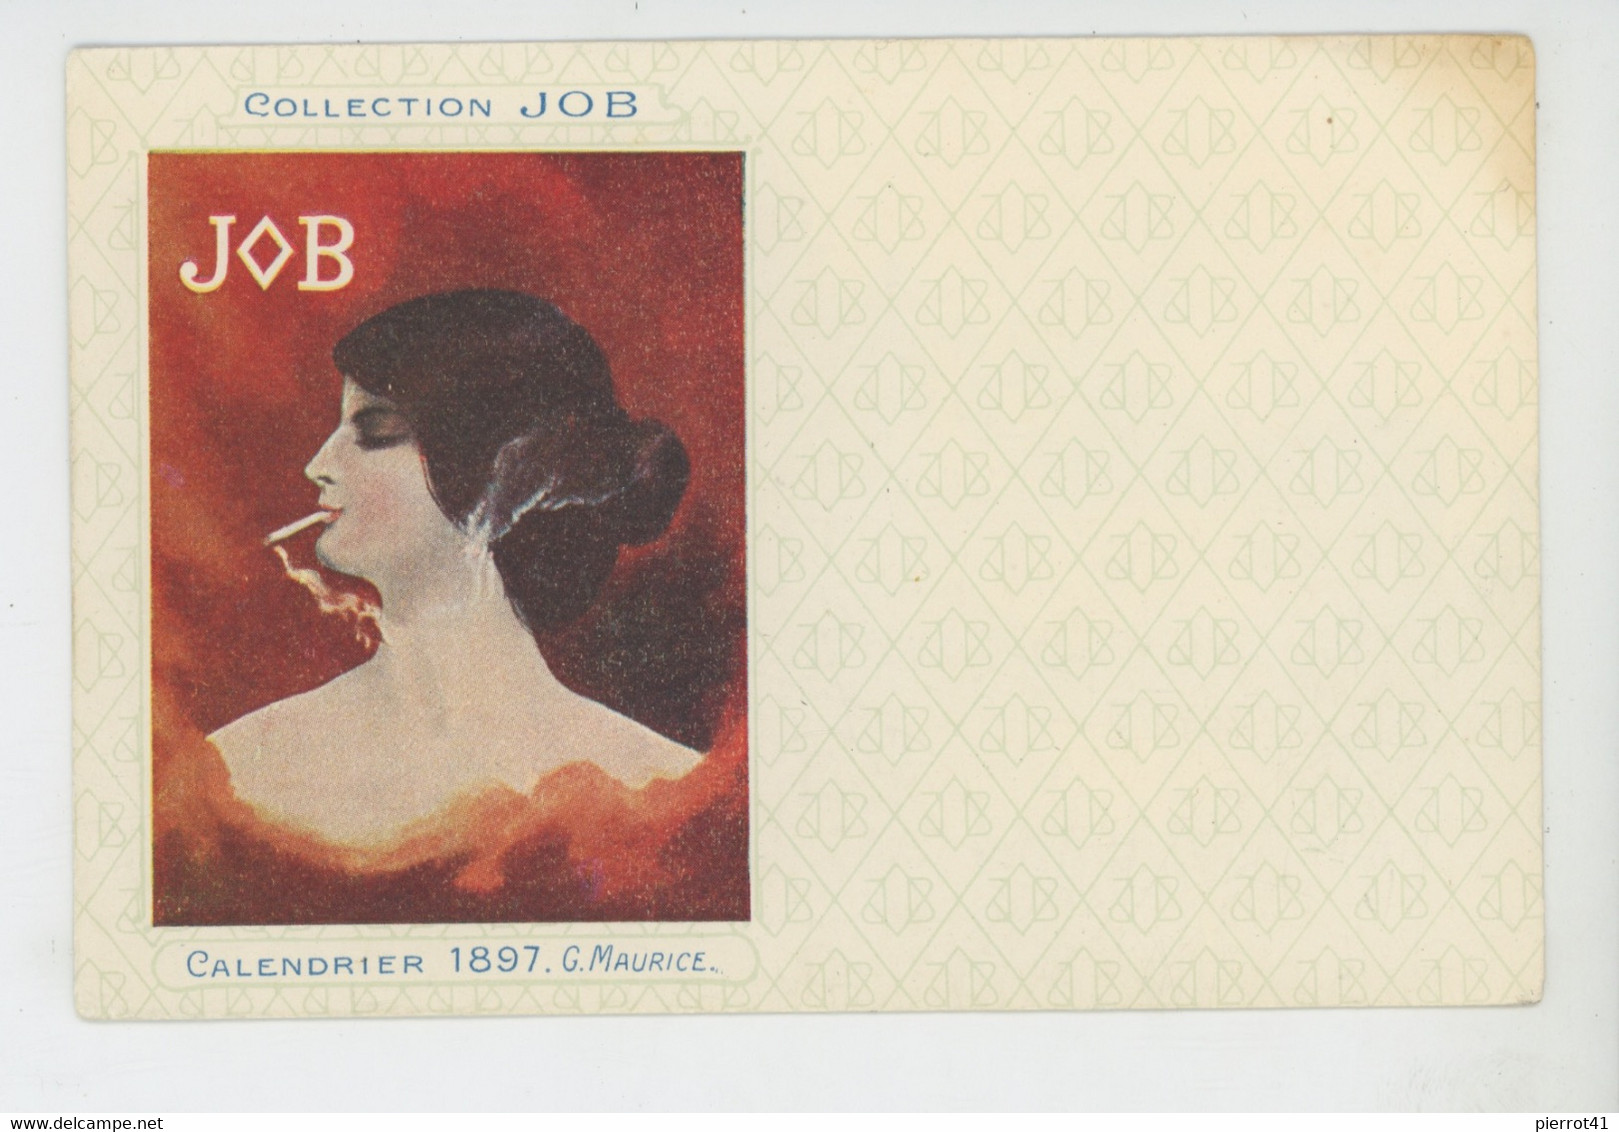 Illustrateur G. MAURICE - COLLECTION JOB - Jolie Carte Fantaisie Femme ART NOUVEAU Fumant Une Cigarette CALENDRIER 1897 - Maurice